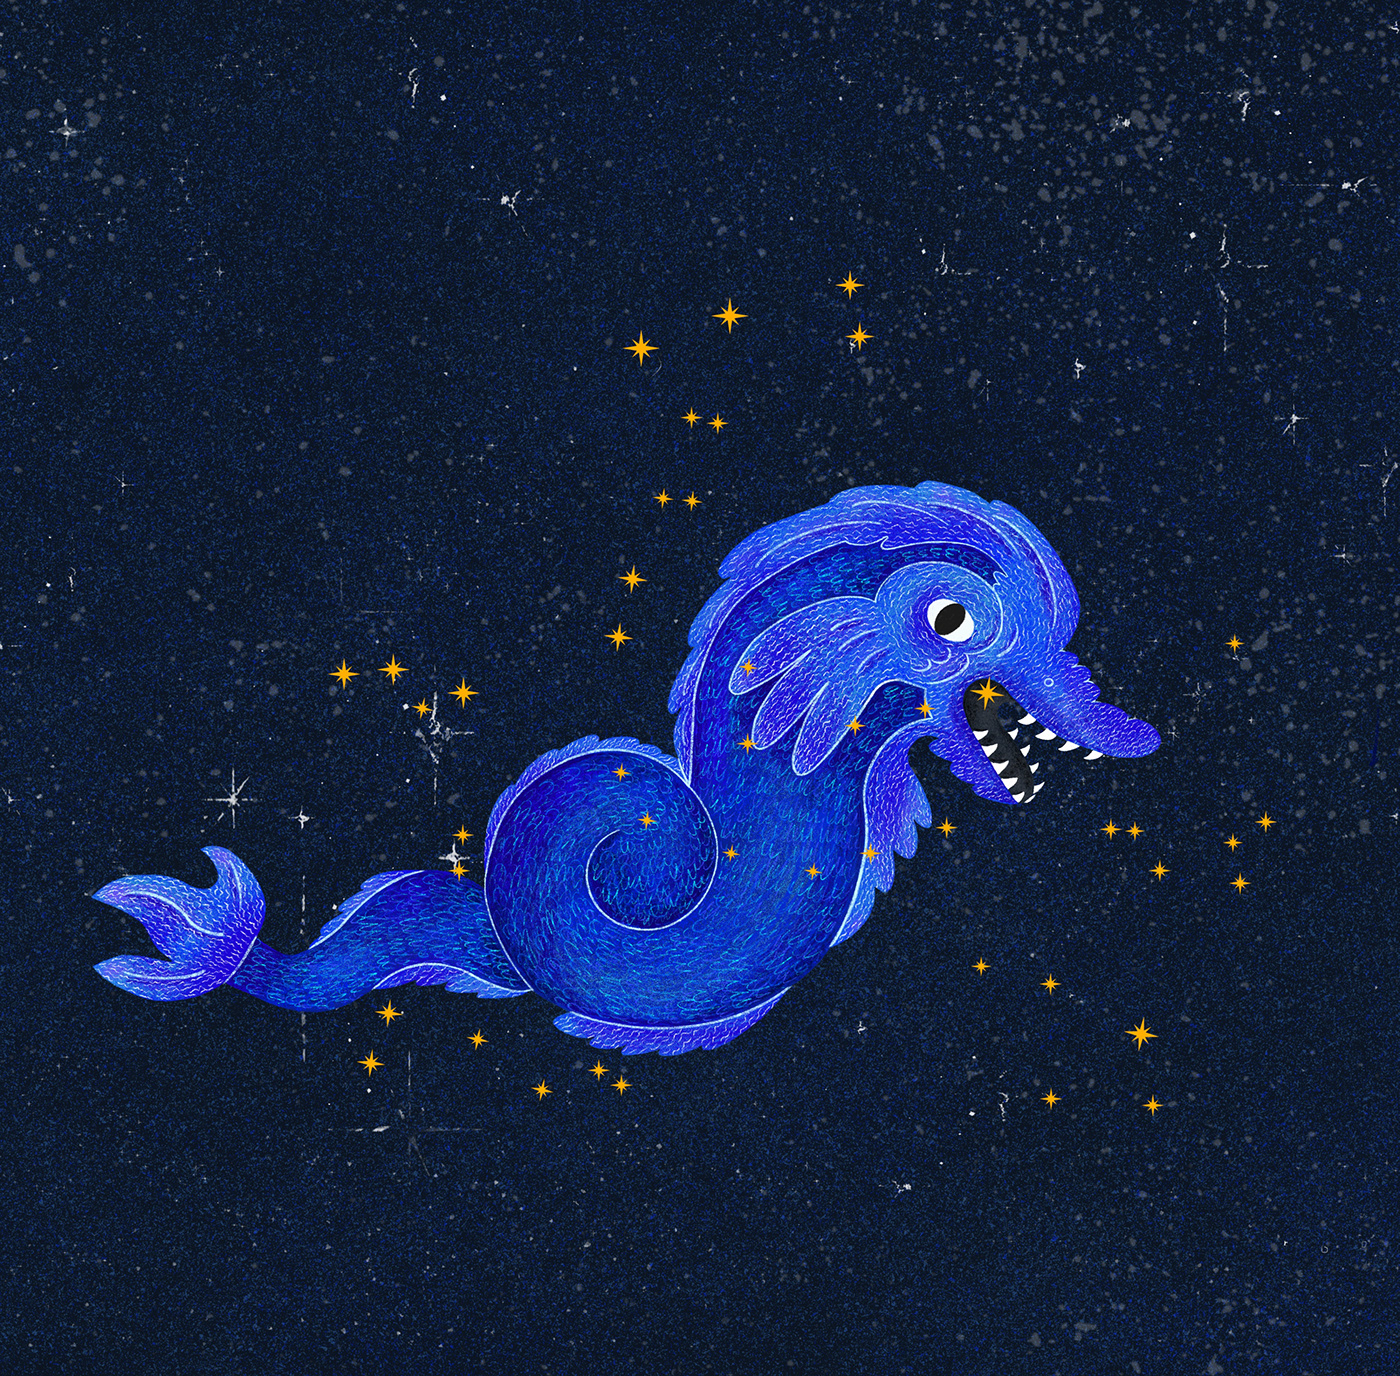 aries astronomy cancer children illustration children's book constellation galaxy milky way stars zodiac